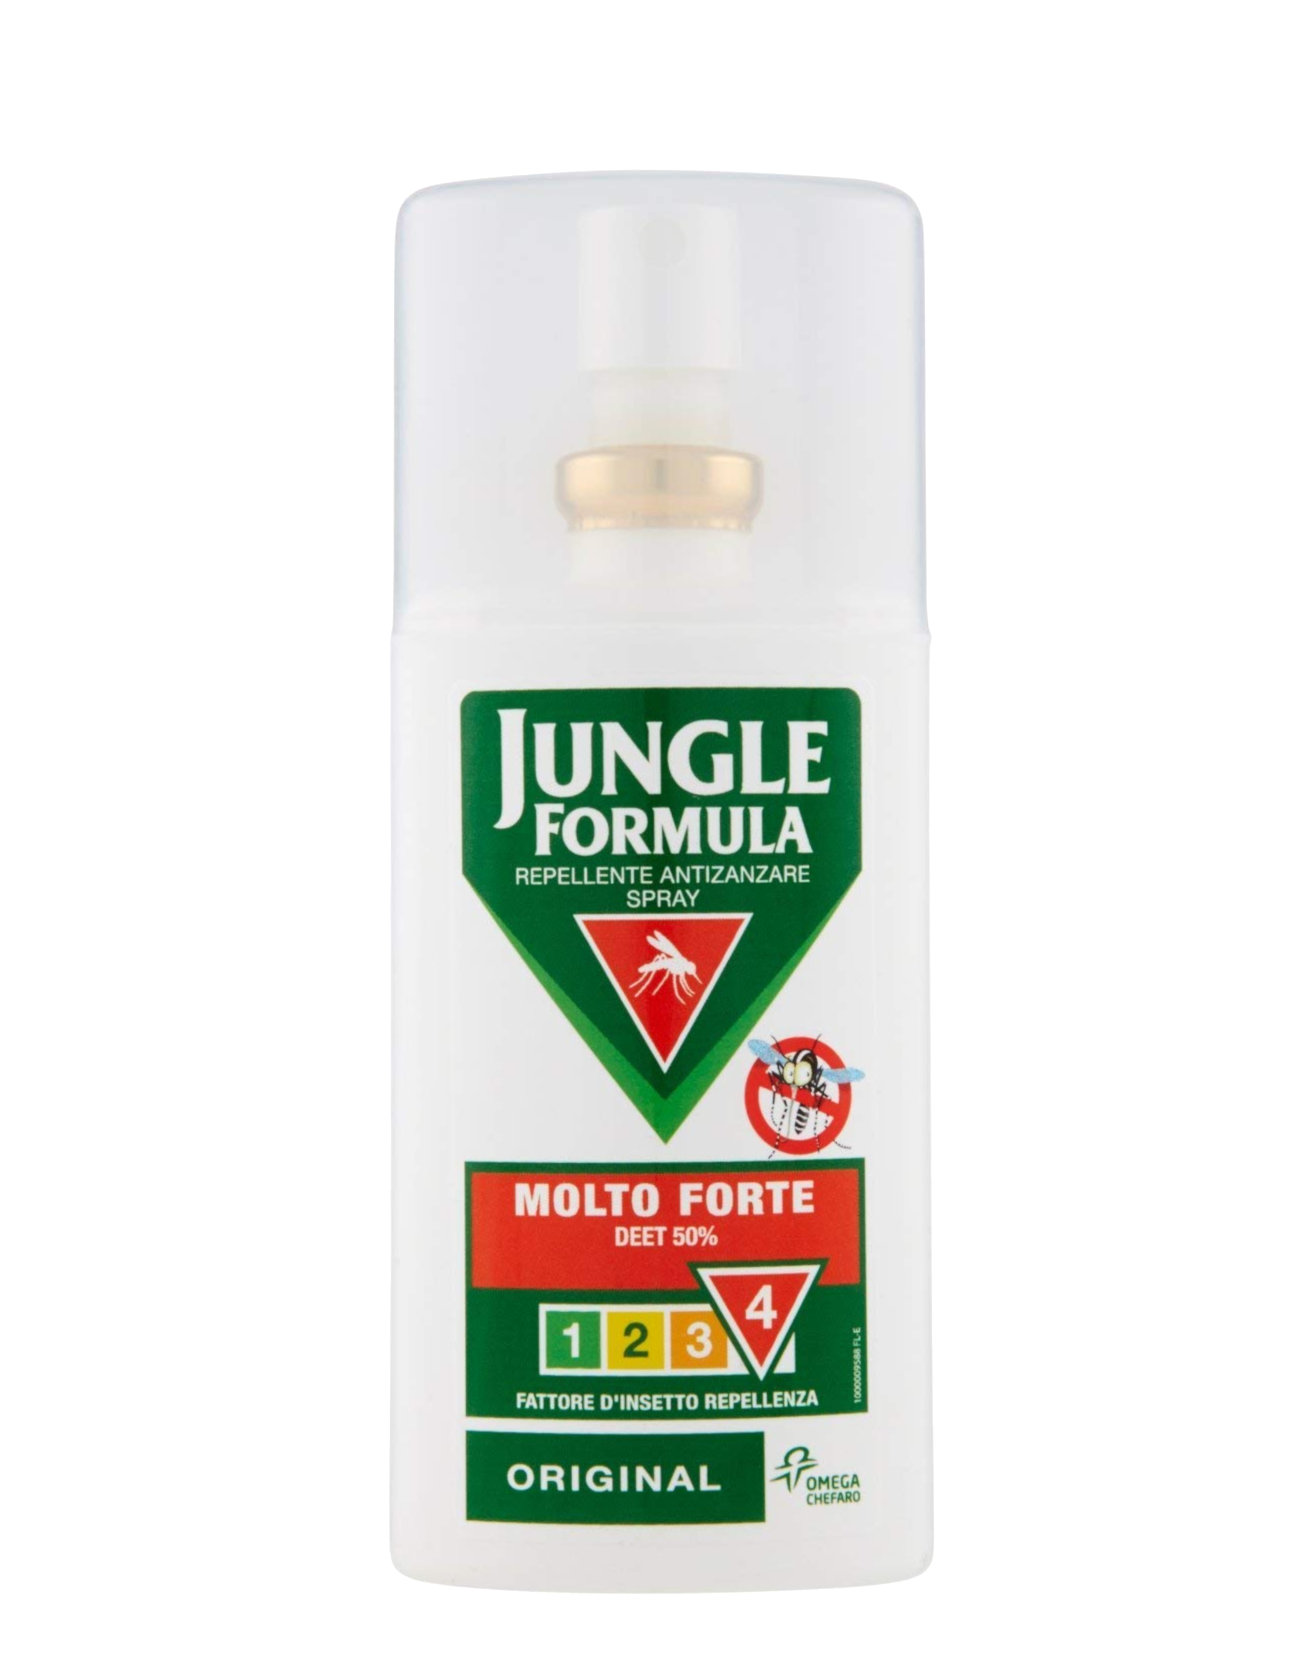 Jungle Formula Molto Forte Spray Original Repellente Antizanzara 75 ml -  Farmavola